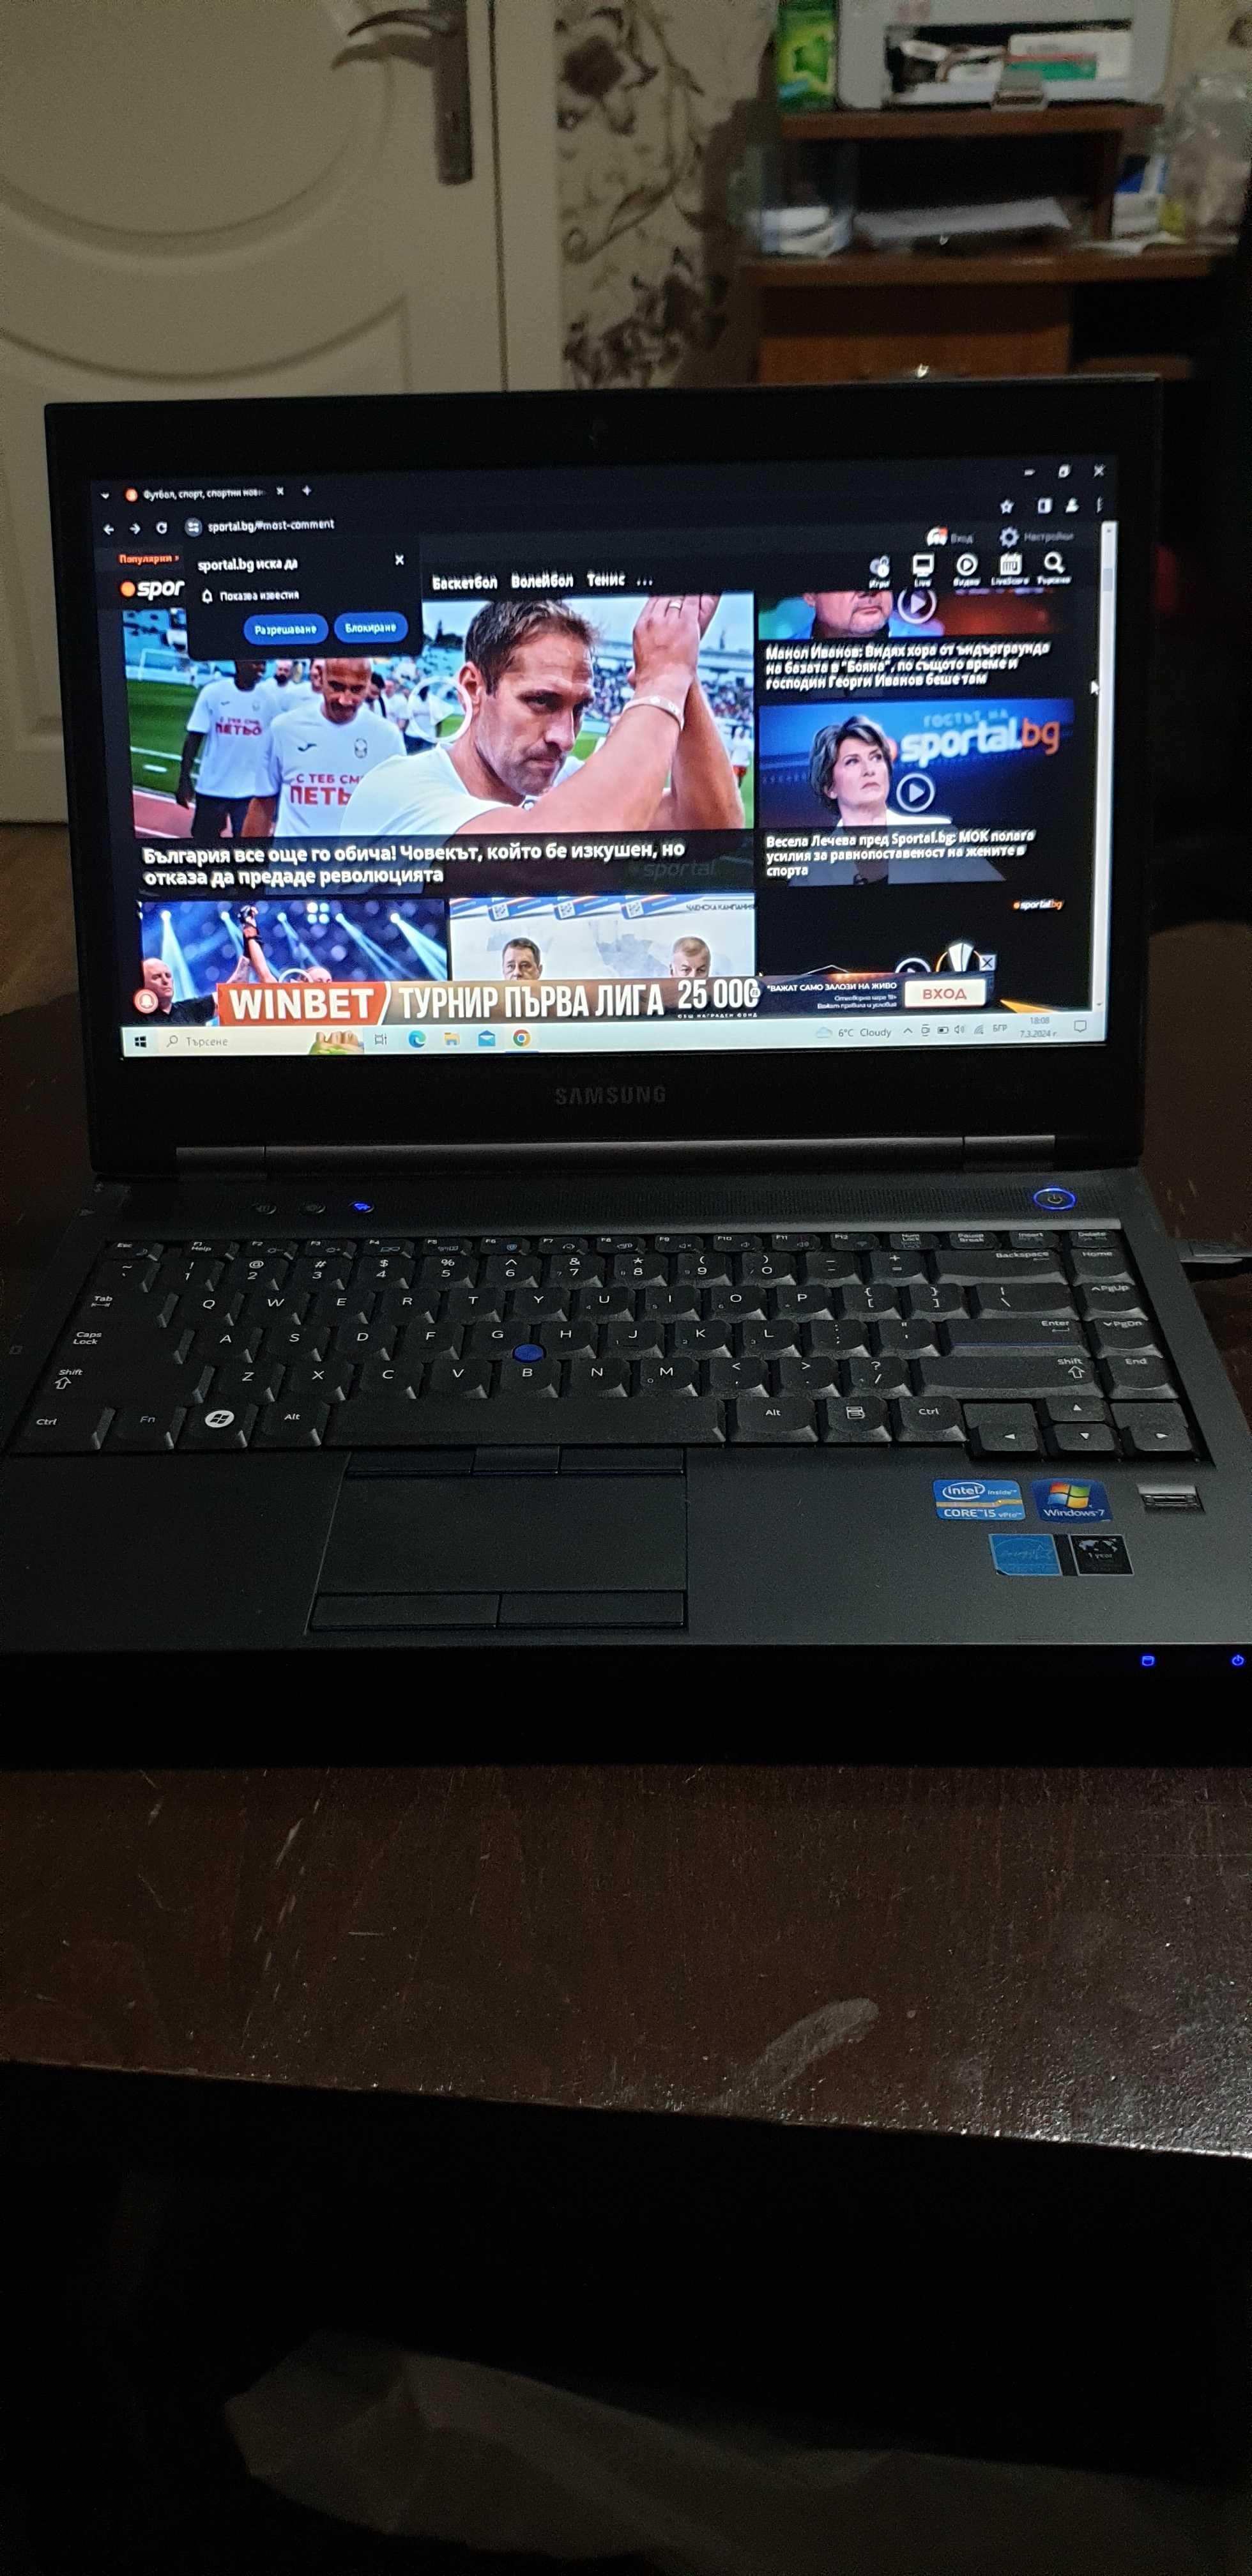 Лаптоп Samsung i5  14 Инча